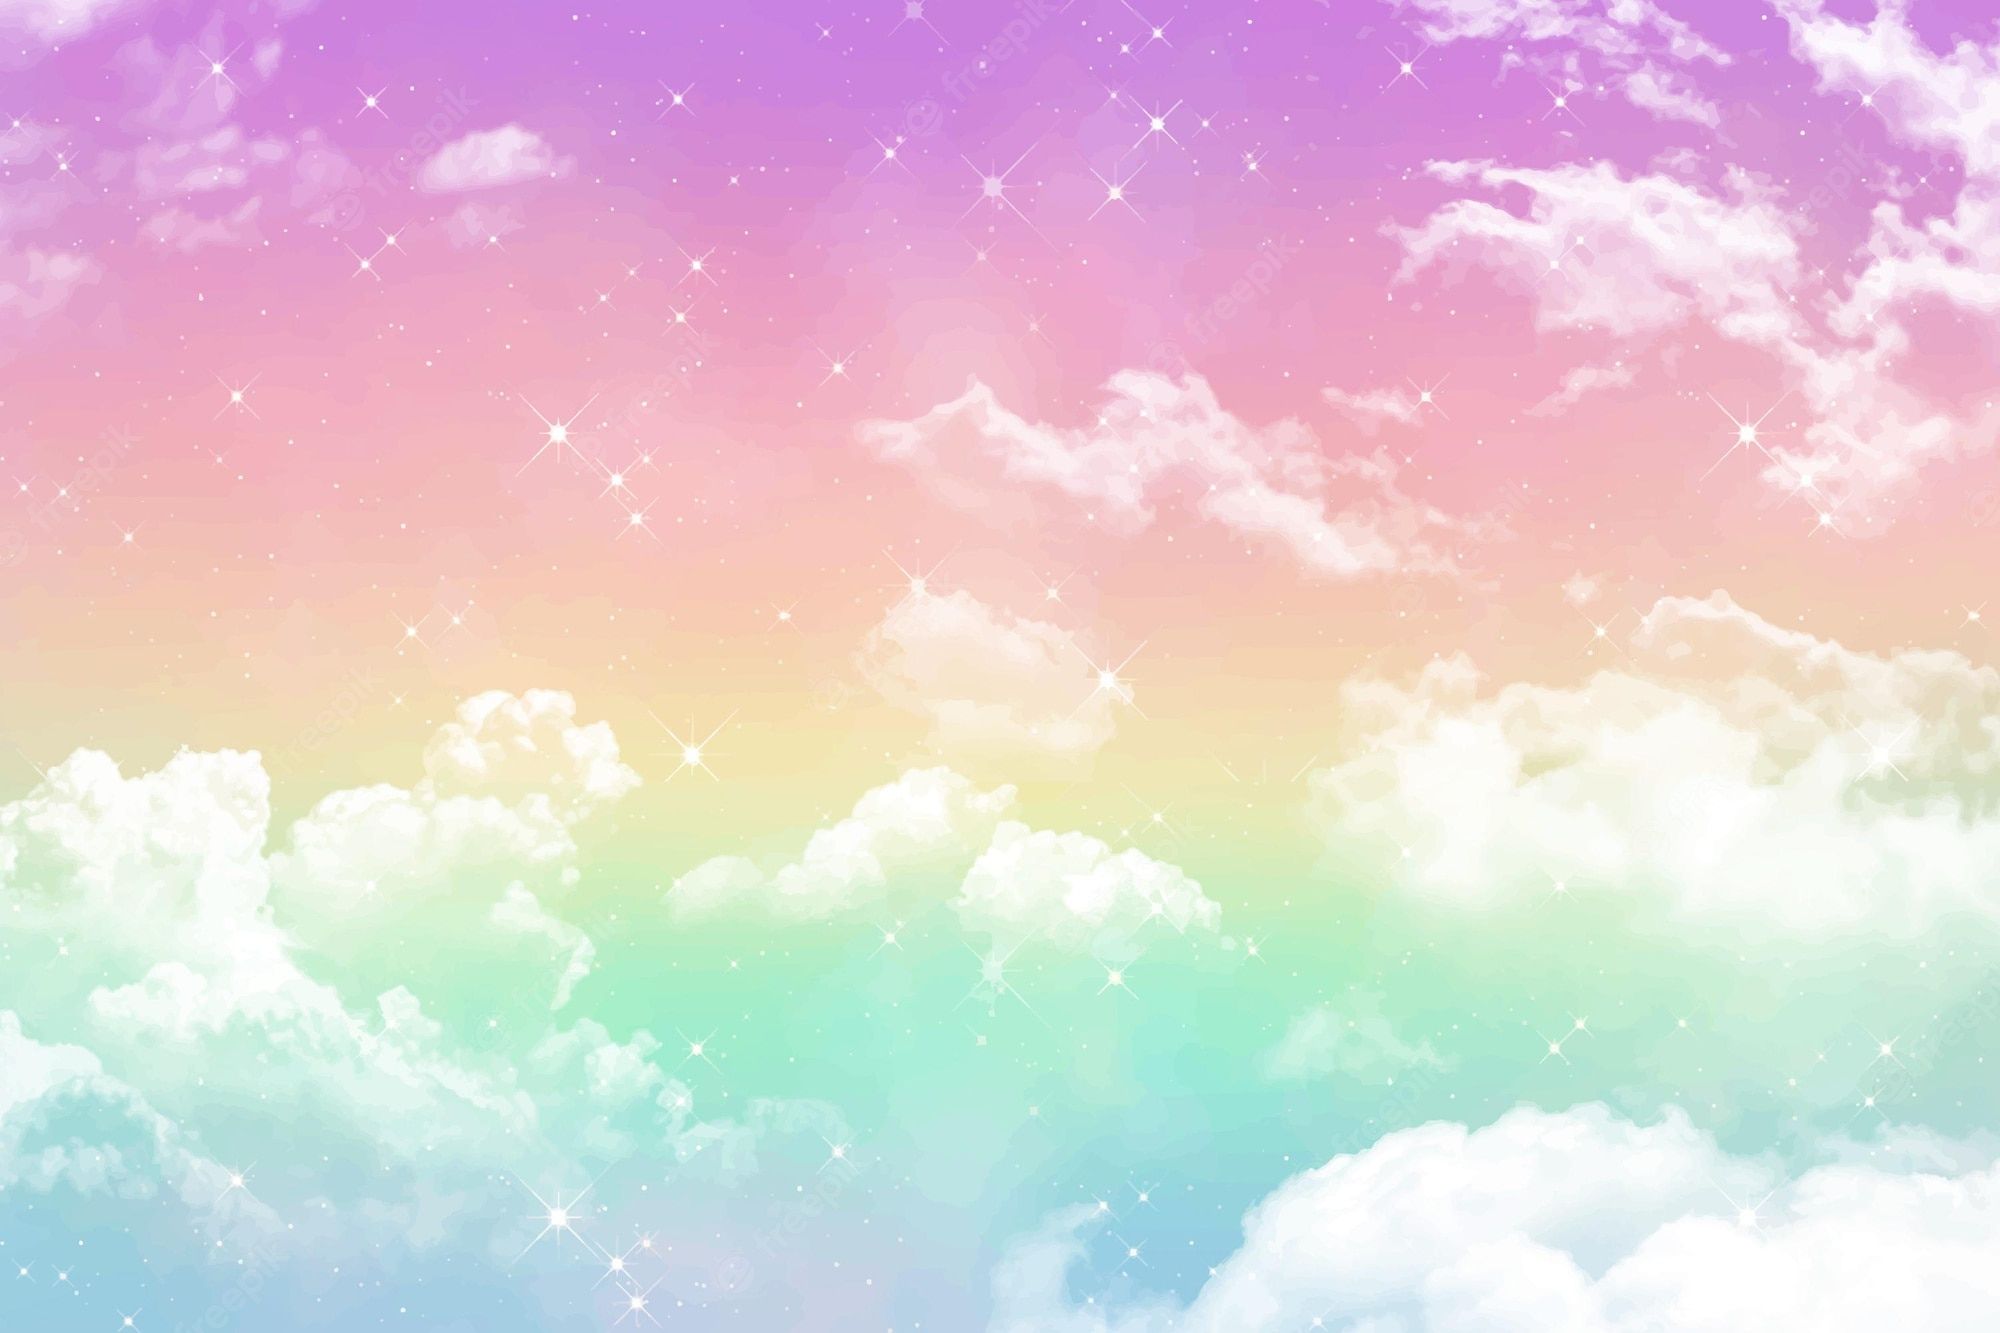 Pastel Rainbow Background Image